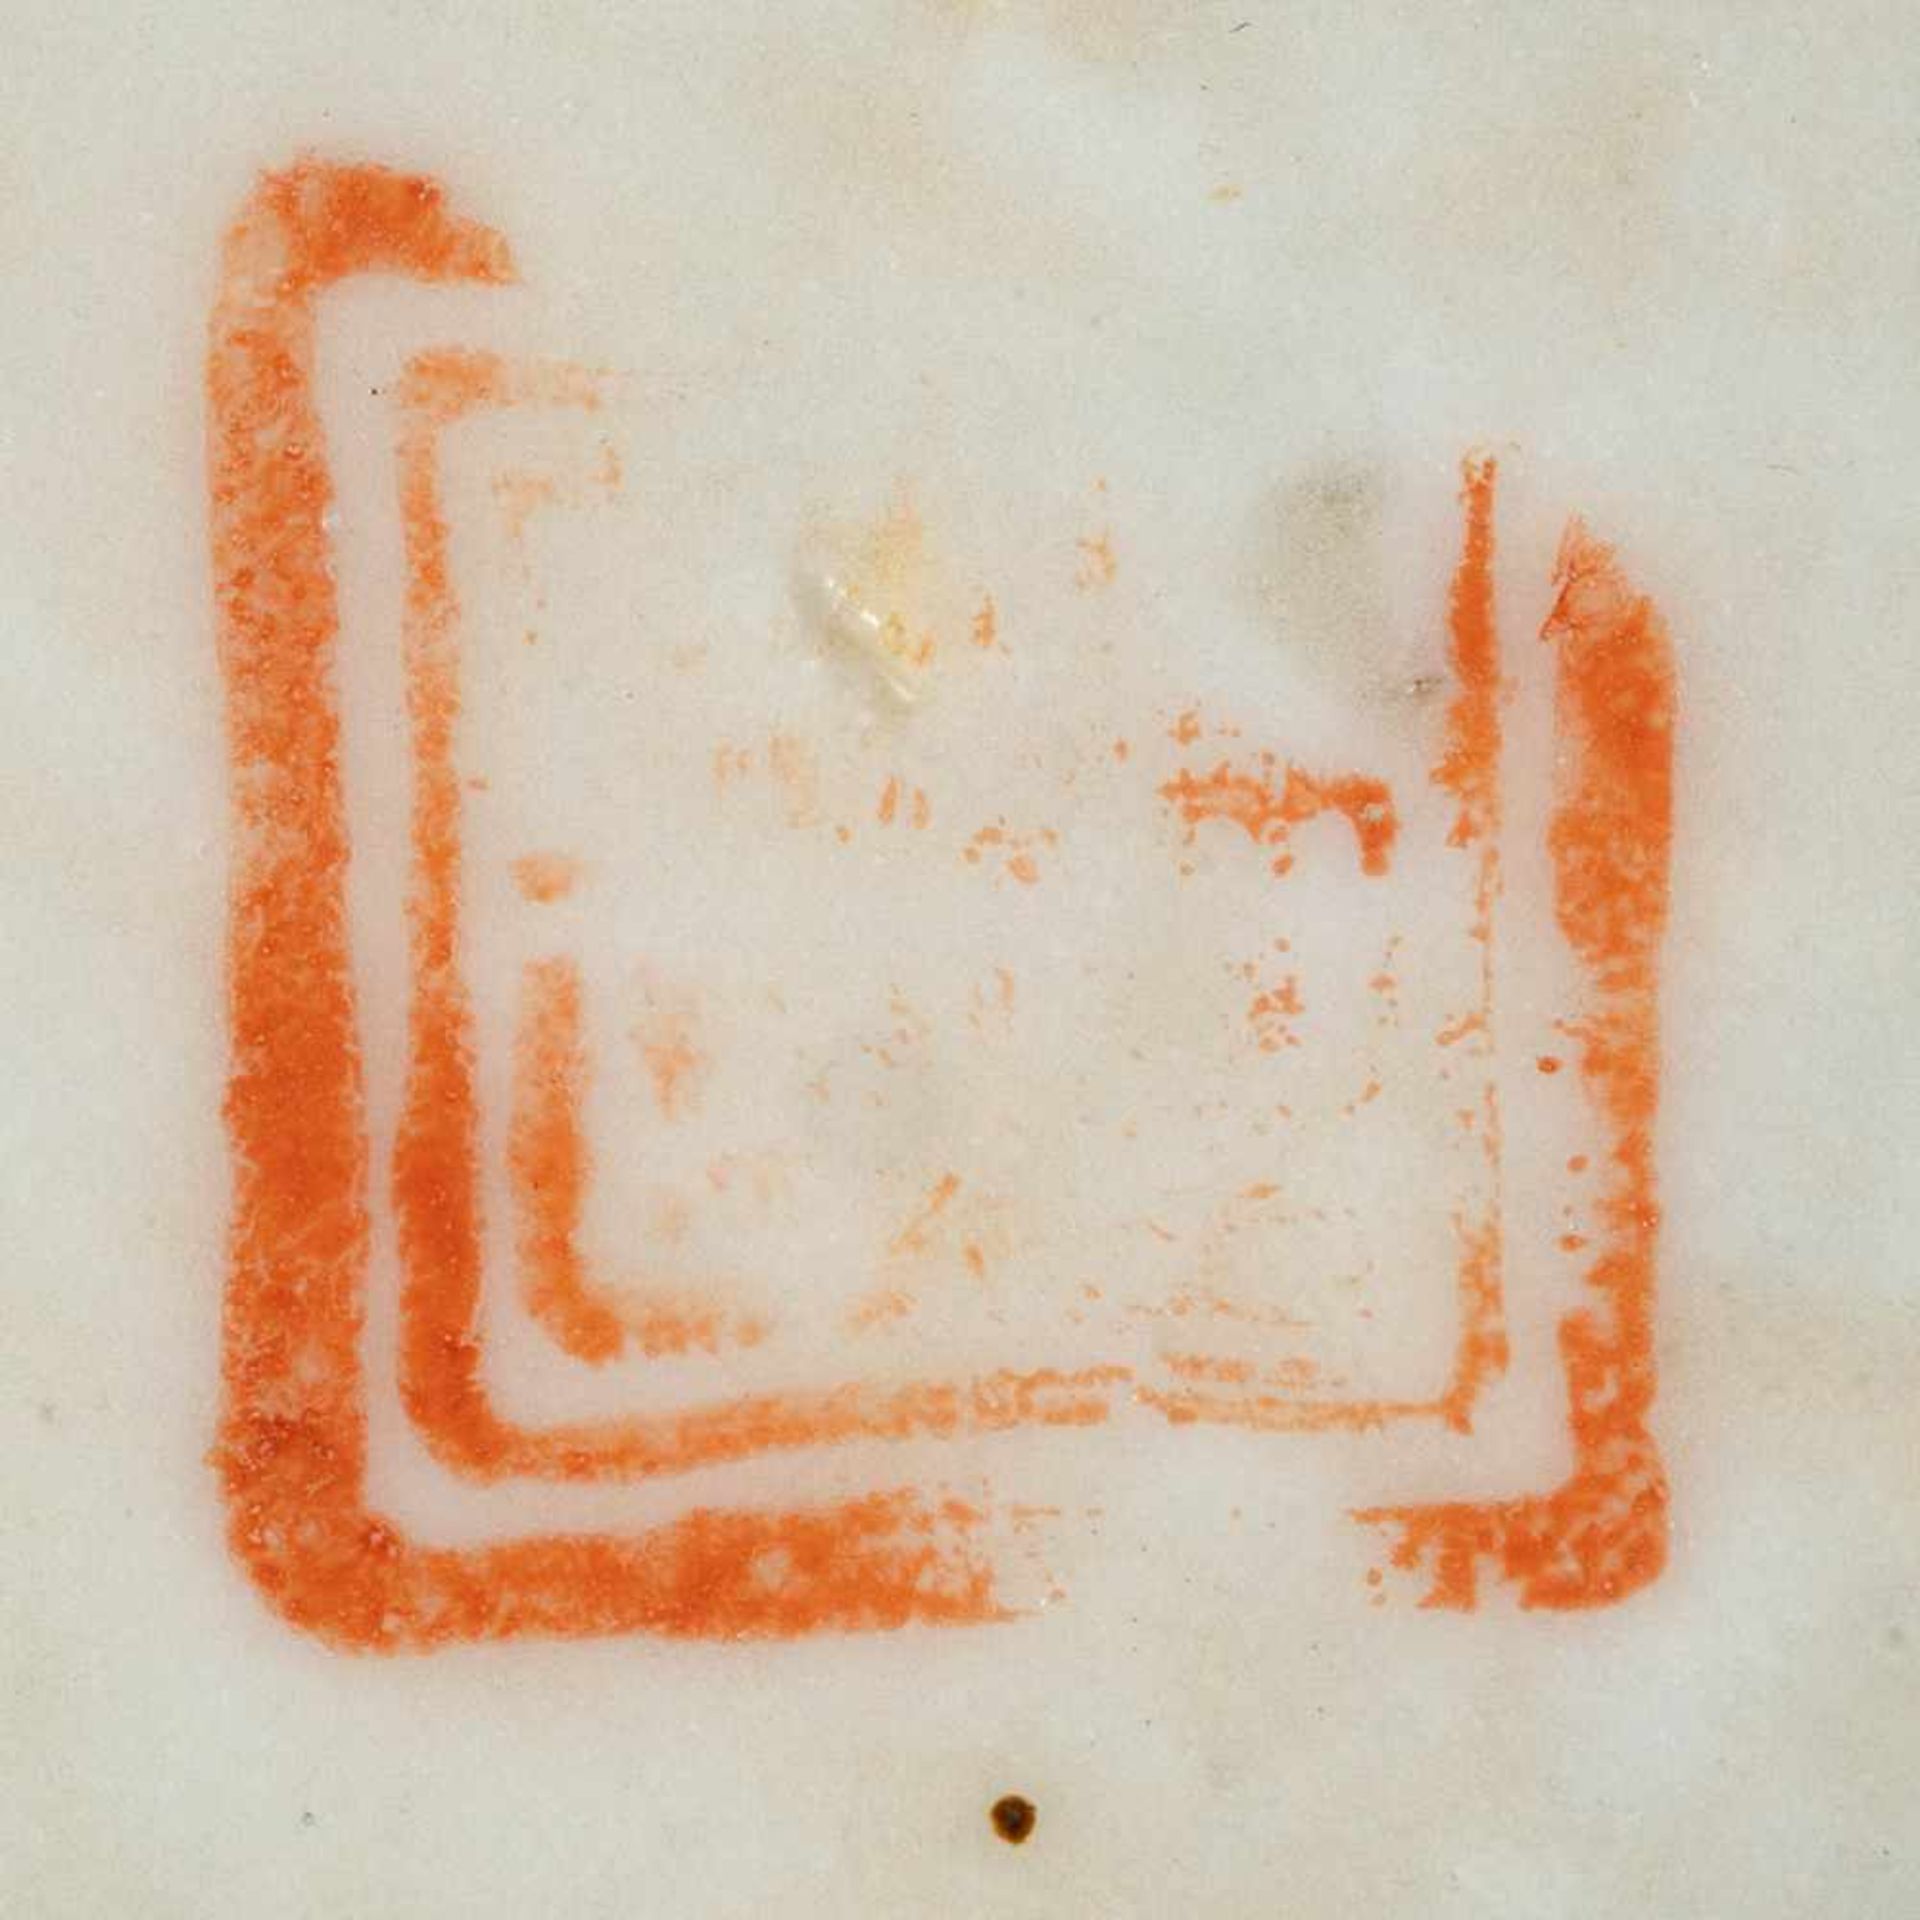 DREI SCHALEN China, um 1900 Porzellan, polychrome Aufglasurbemalung. D. 17,9 cm-18,4 cm. Im Boden - Bild 3 aus 4